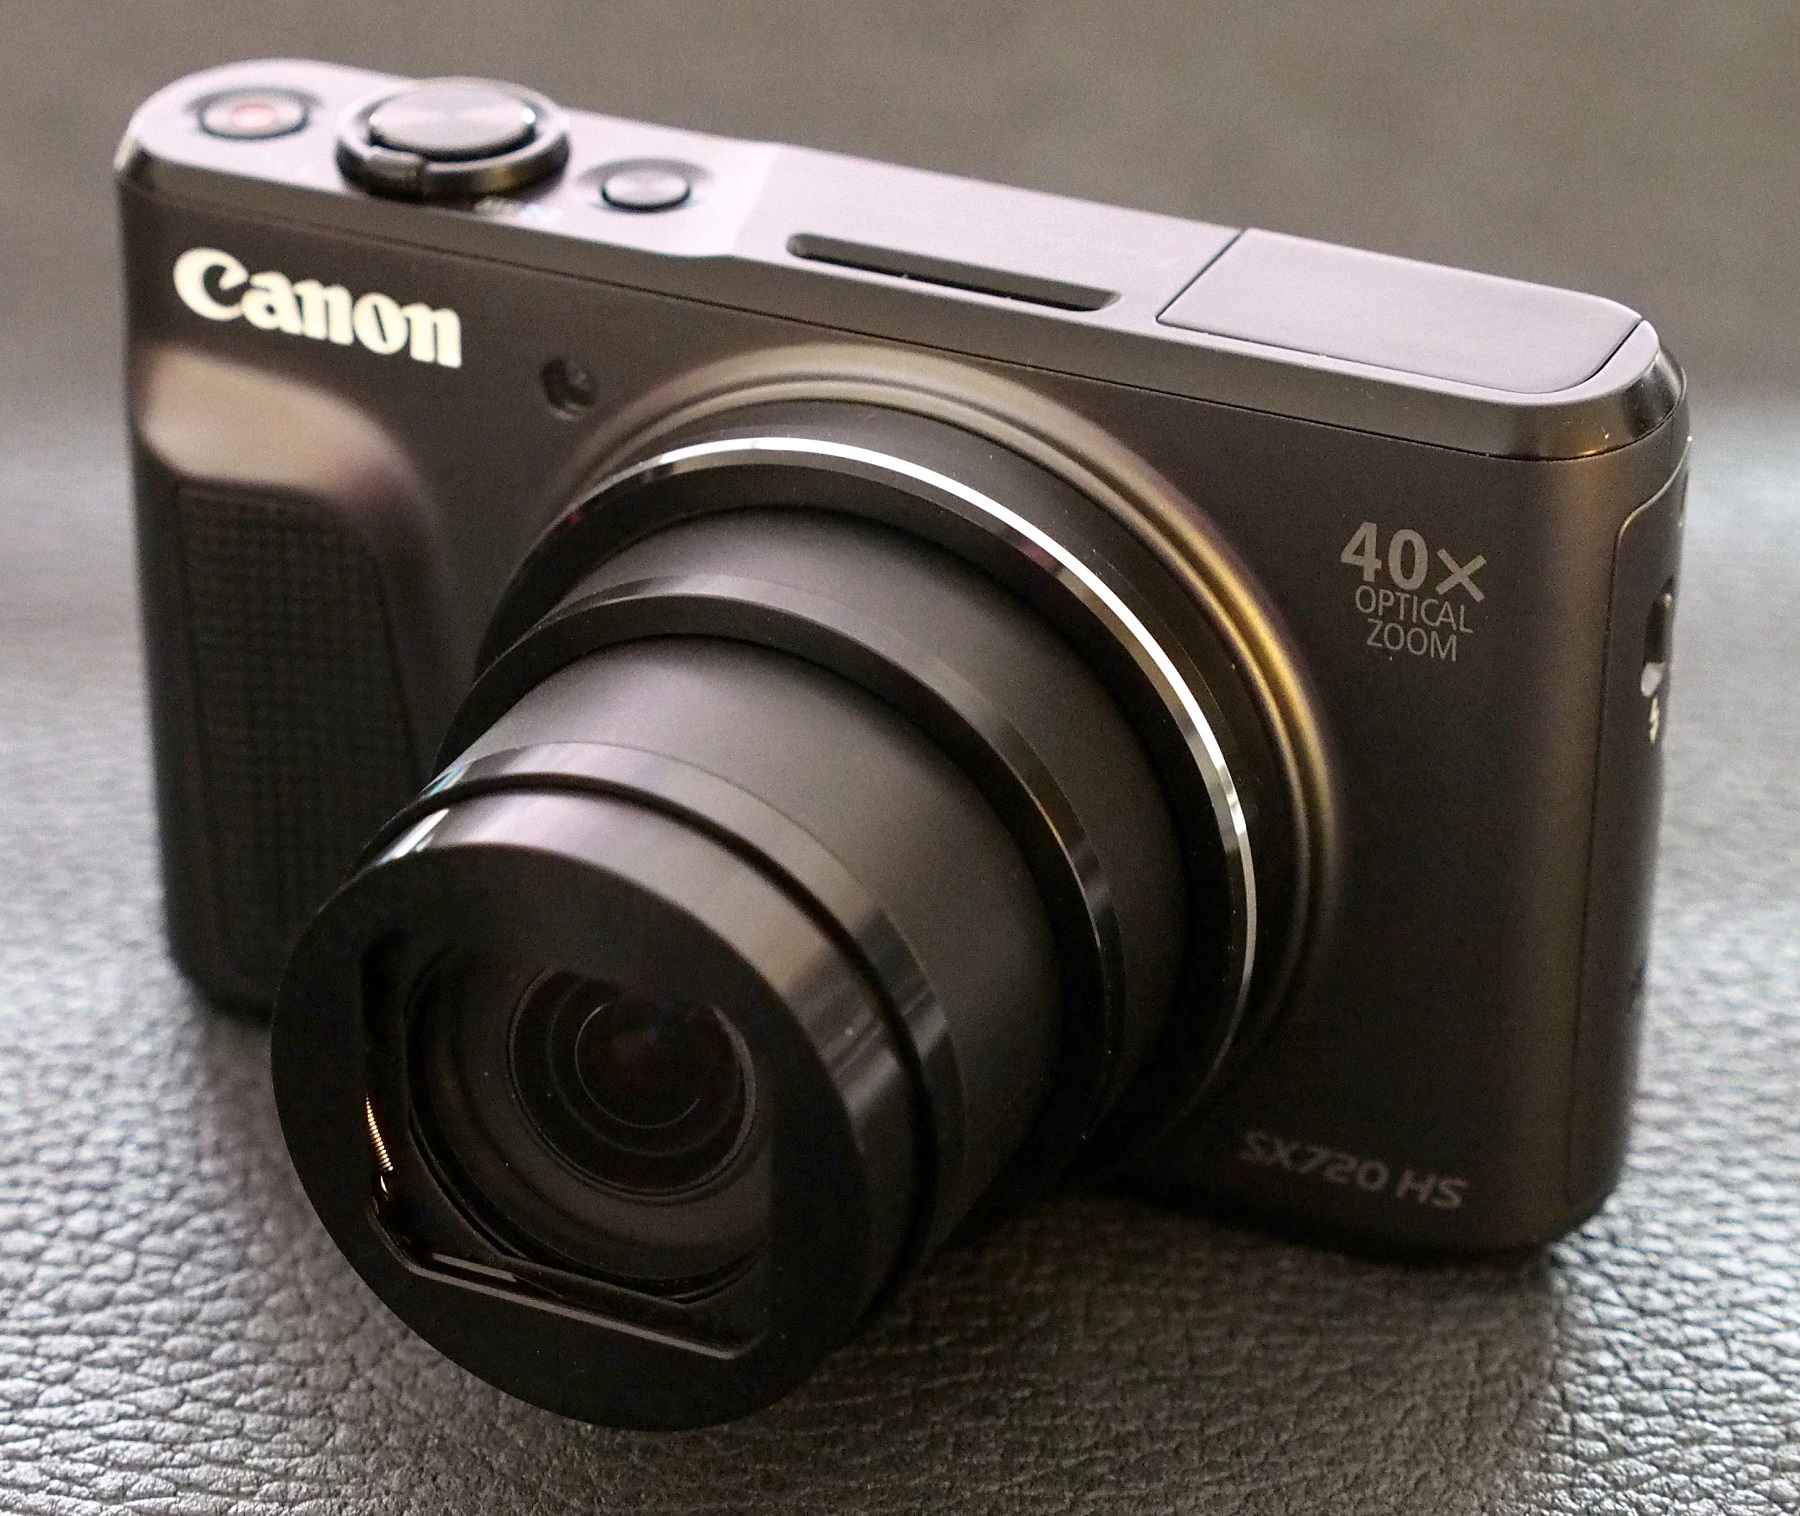 Canon PowerShot SX720 HS カメラケースSX720 HS ケース キャノン パワーショット カバー カメラカバー カメラバッグ  バッグ レザーケース 一眼 デジカメ 合成革